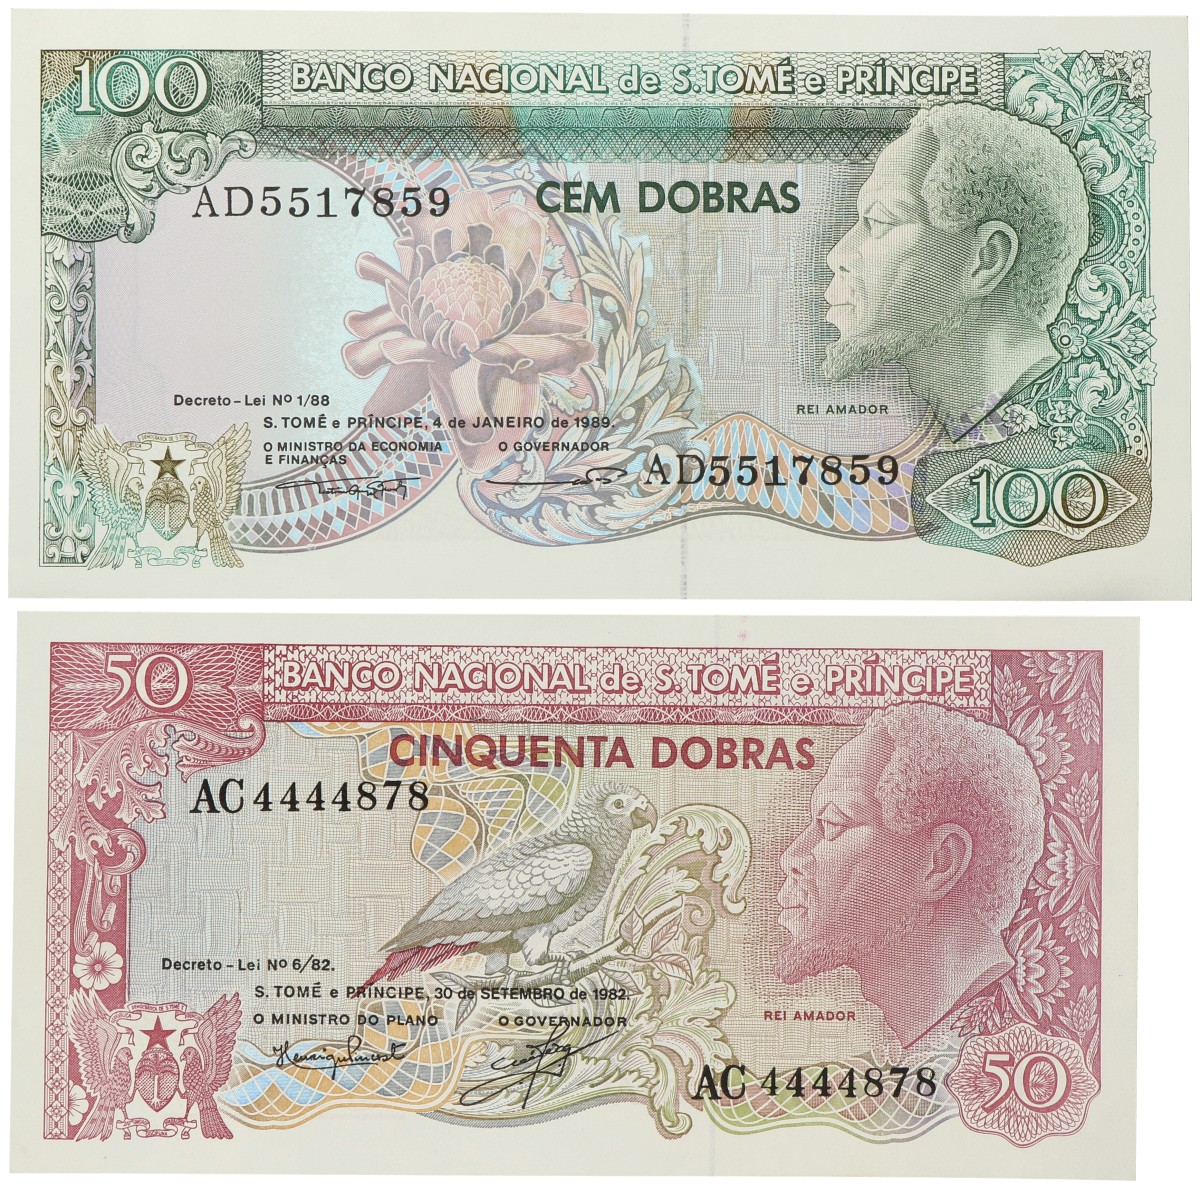 Sao Tomé en Principe. 50/100 Dobras. Banknotes. Type 1982. - UNC.